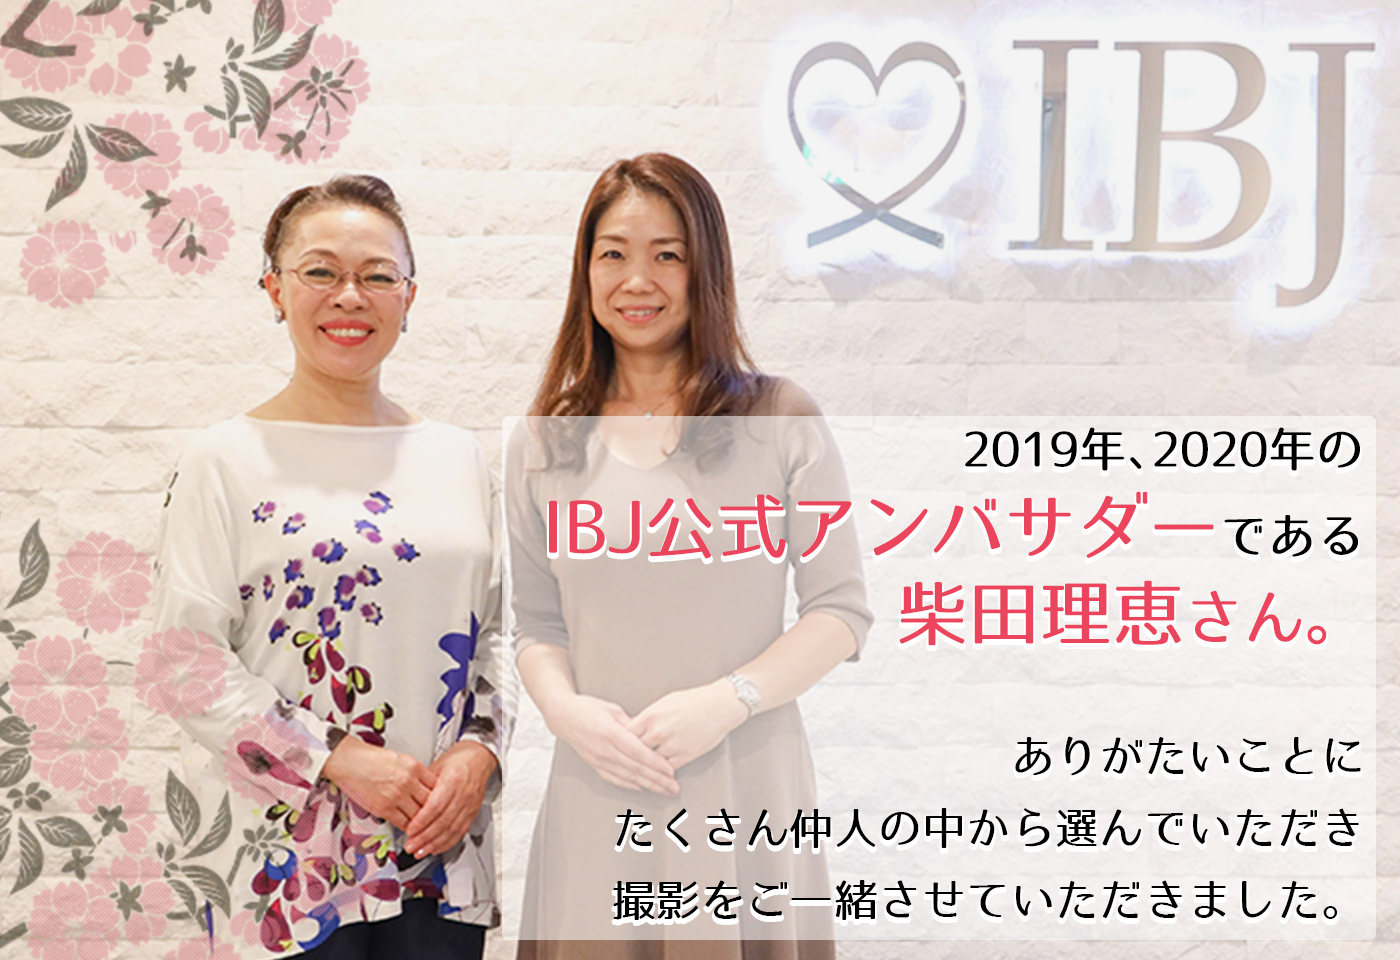 2019年、2020年のIBJ公式アンバサダーである柴田理恵さん。ありがたいことに、たくさん仲人の中から選んでいただき撮影をご一緒させていただきました